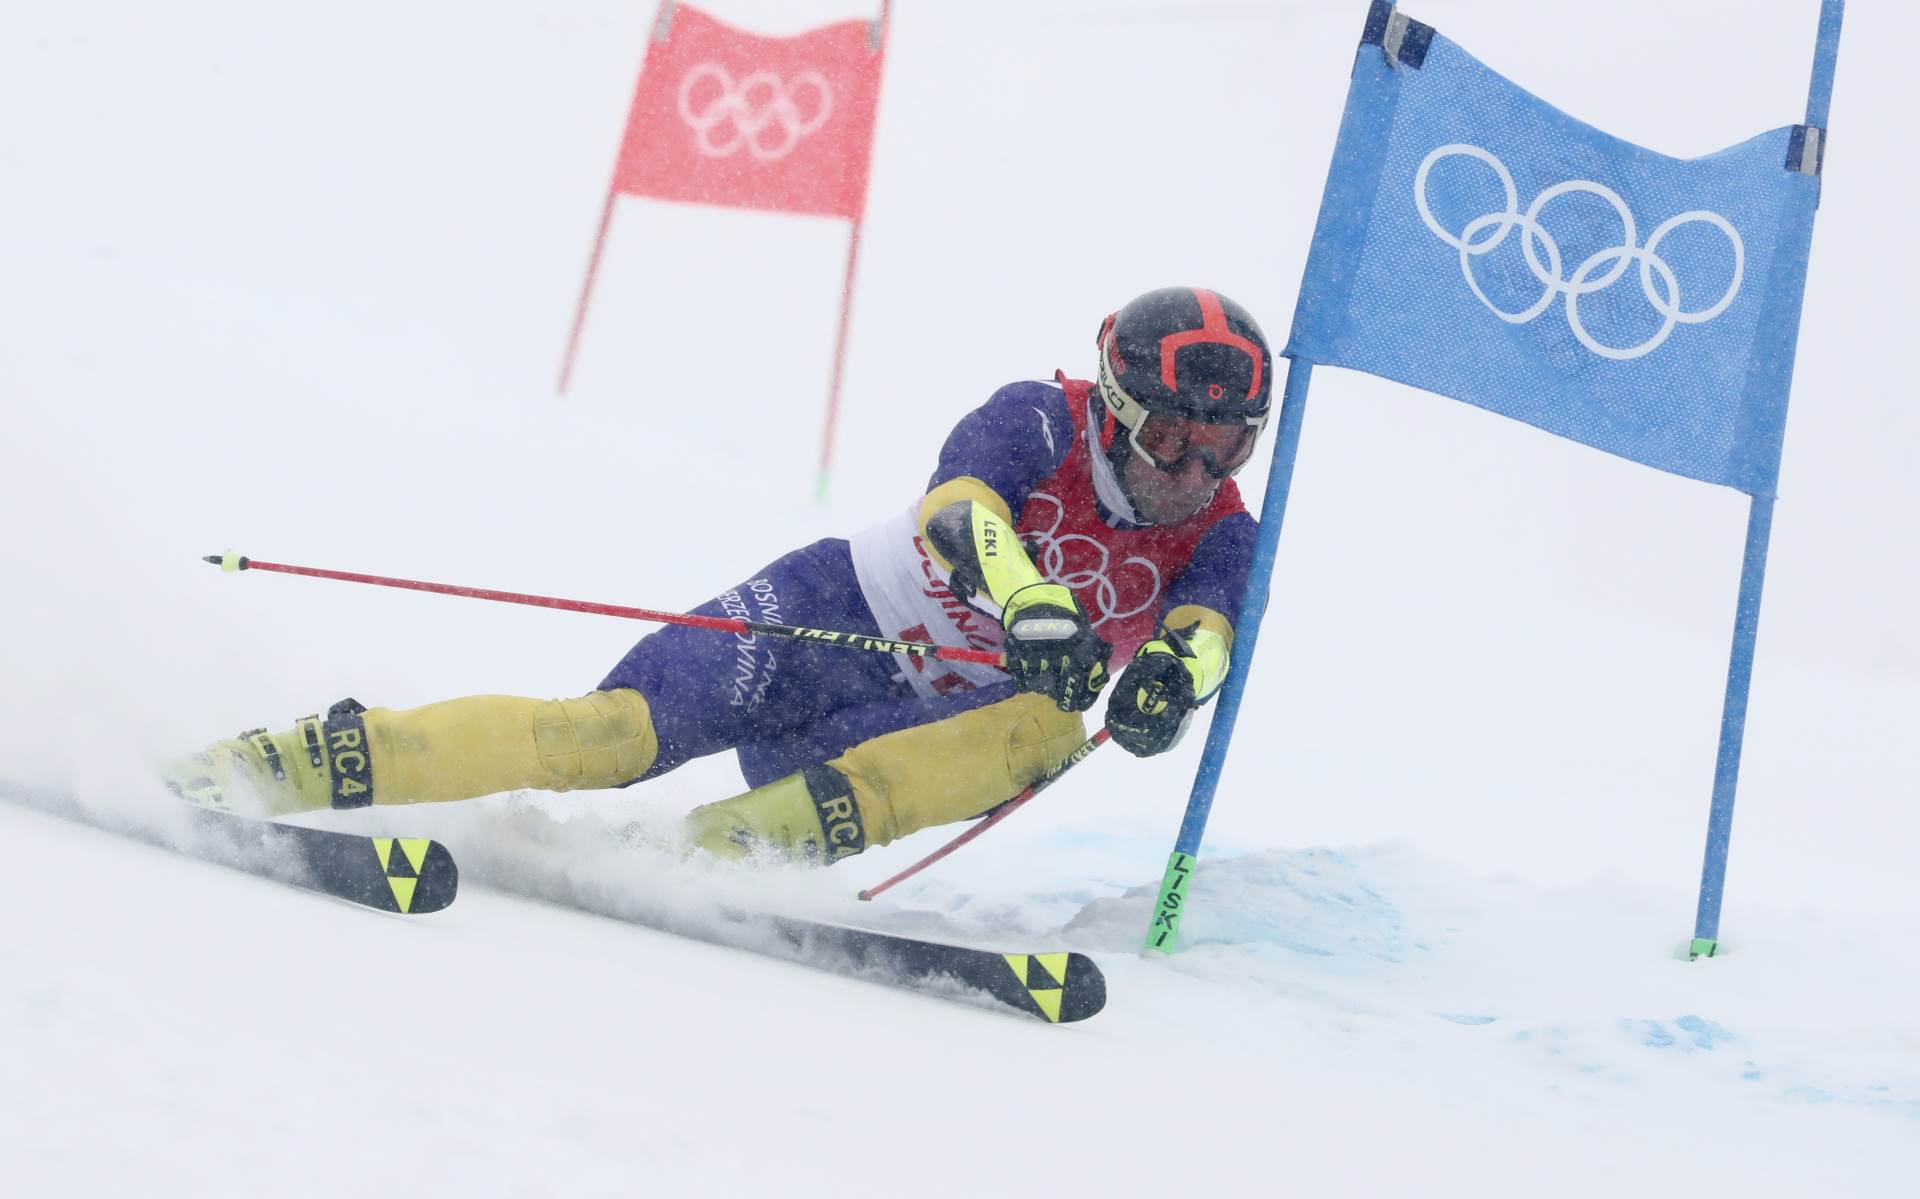  emir lokmić se takmiči u slalomu 